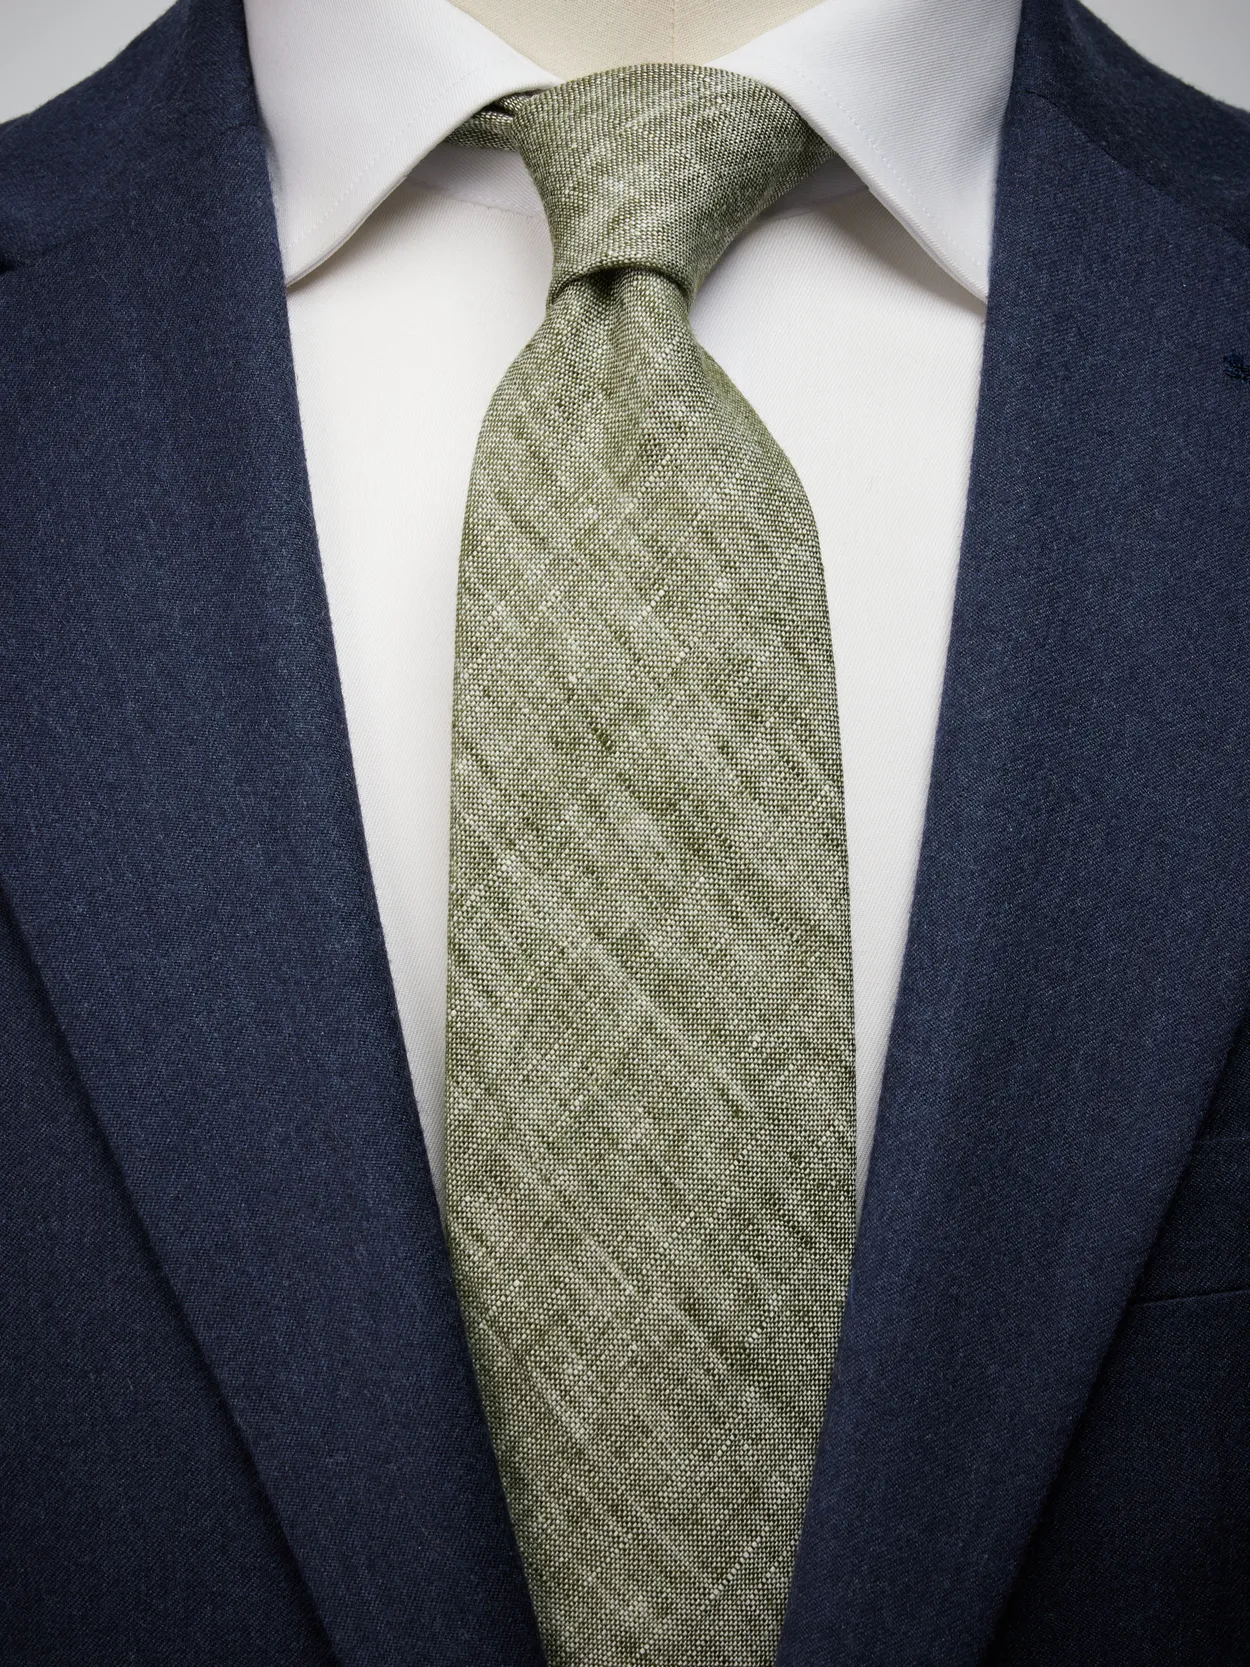 Olive Green Tie Linen